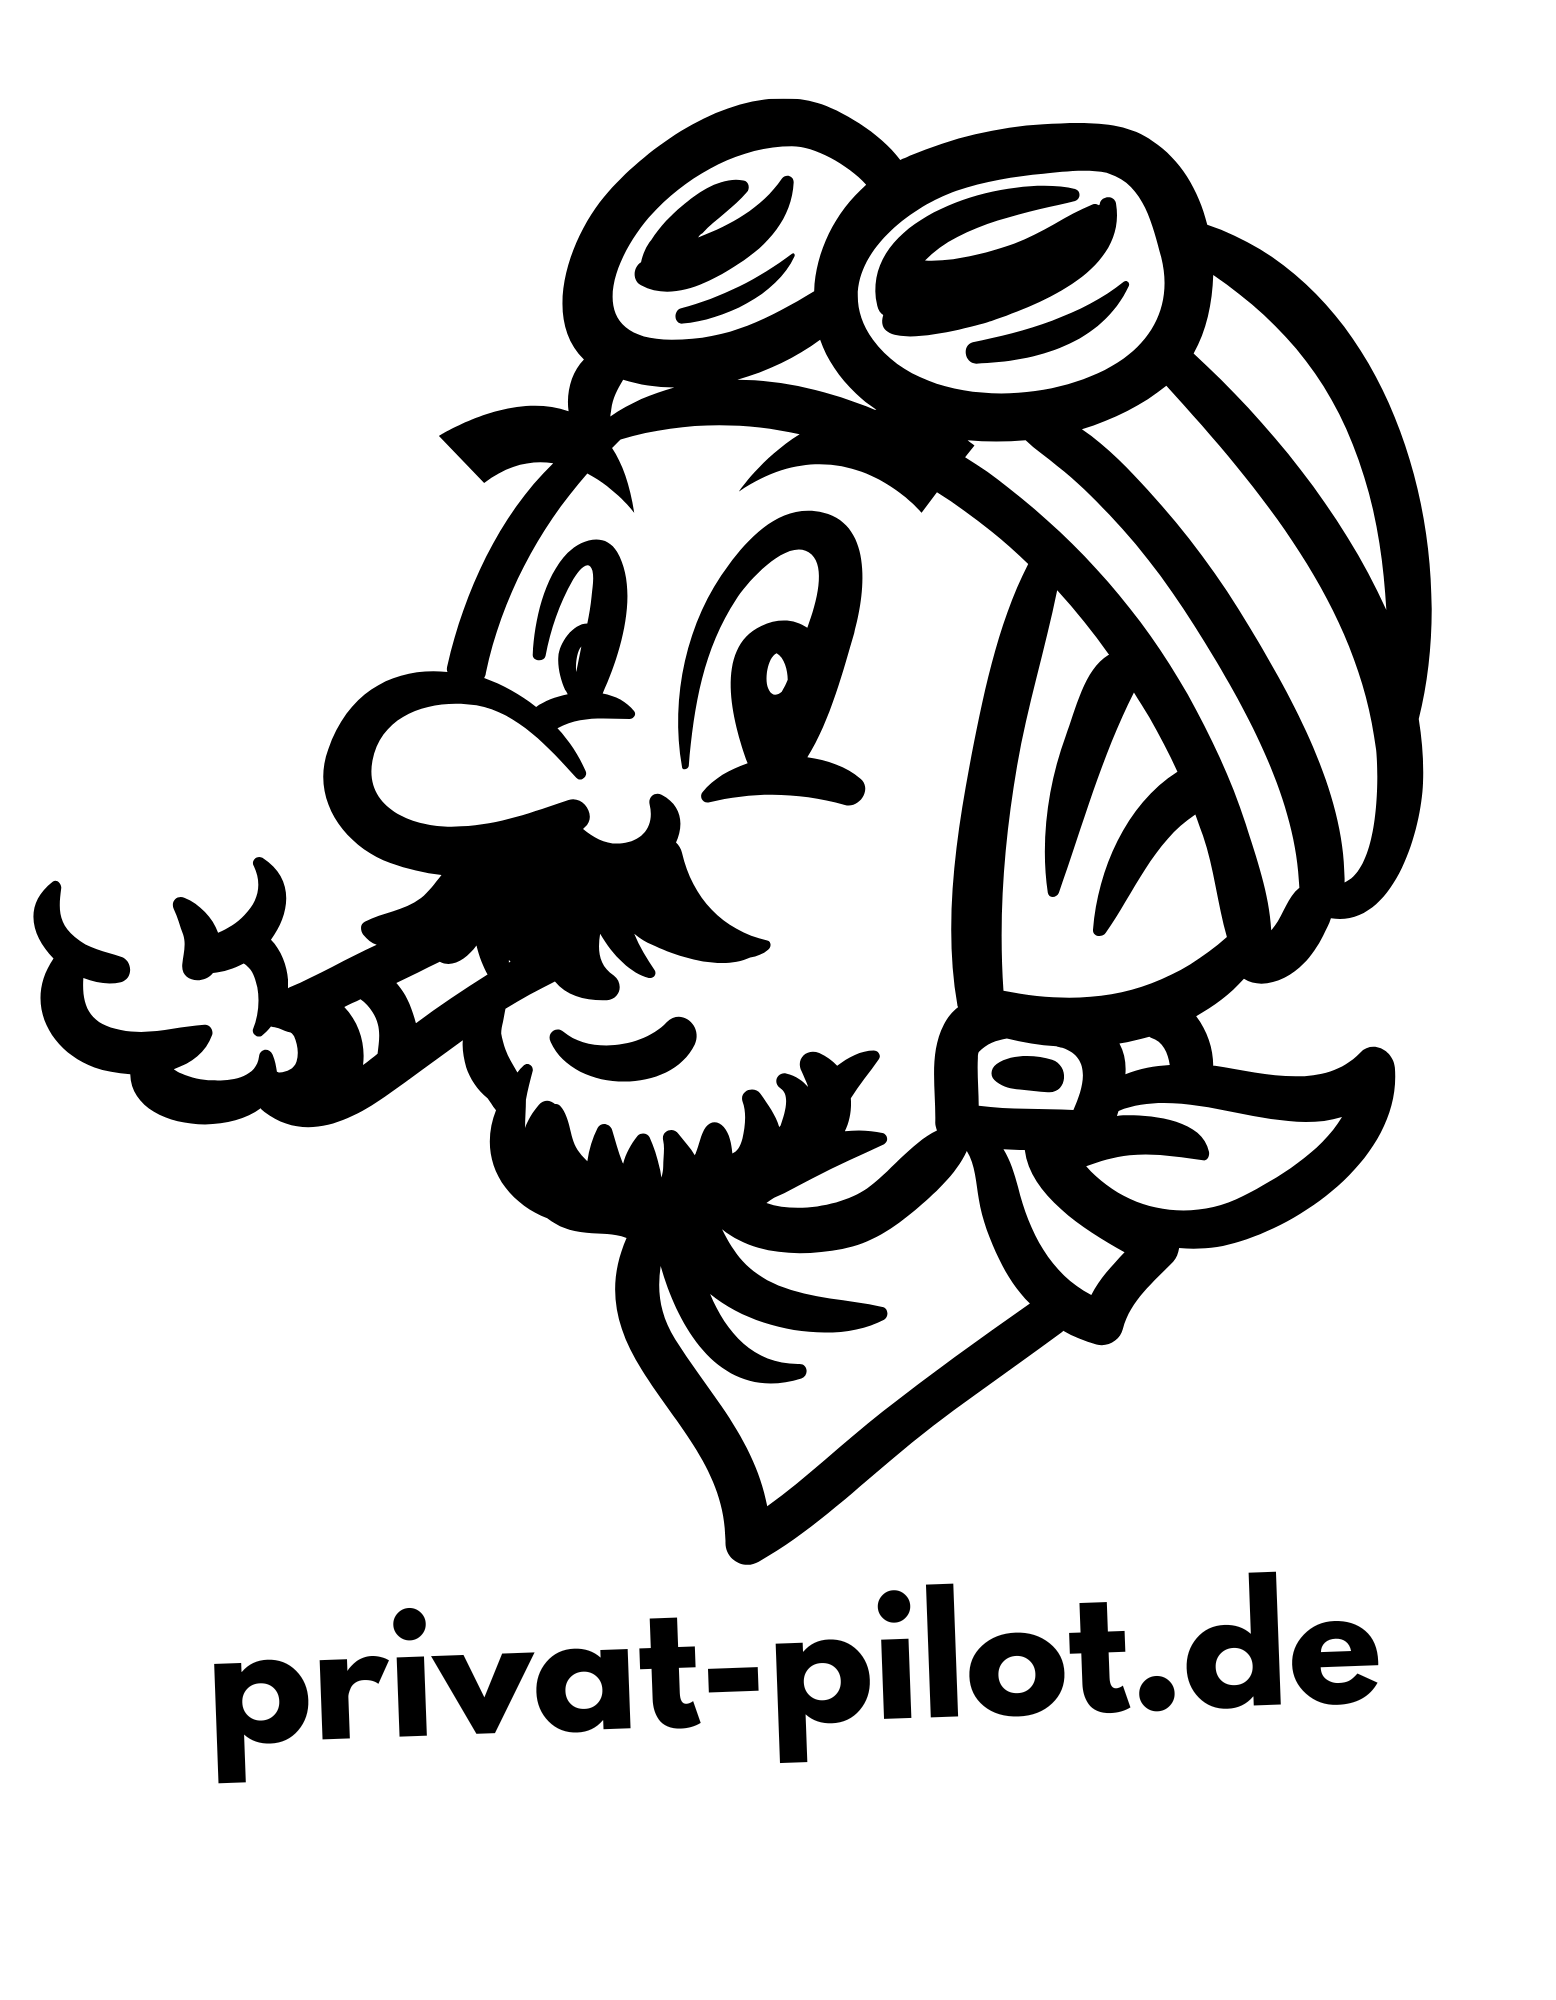 privat-pilot.de